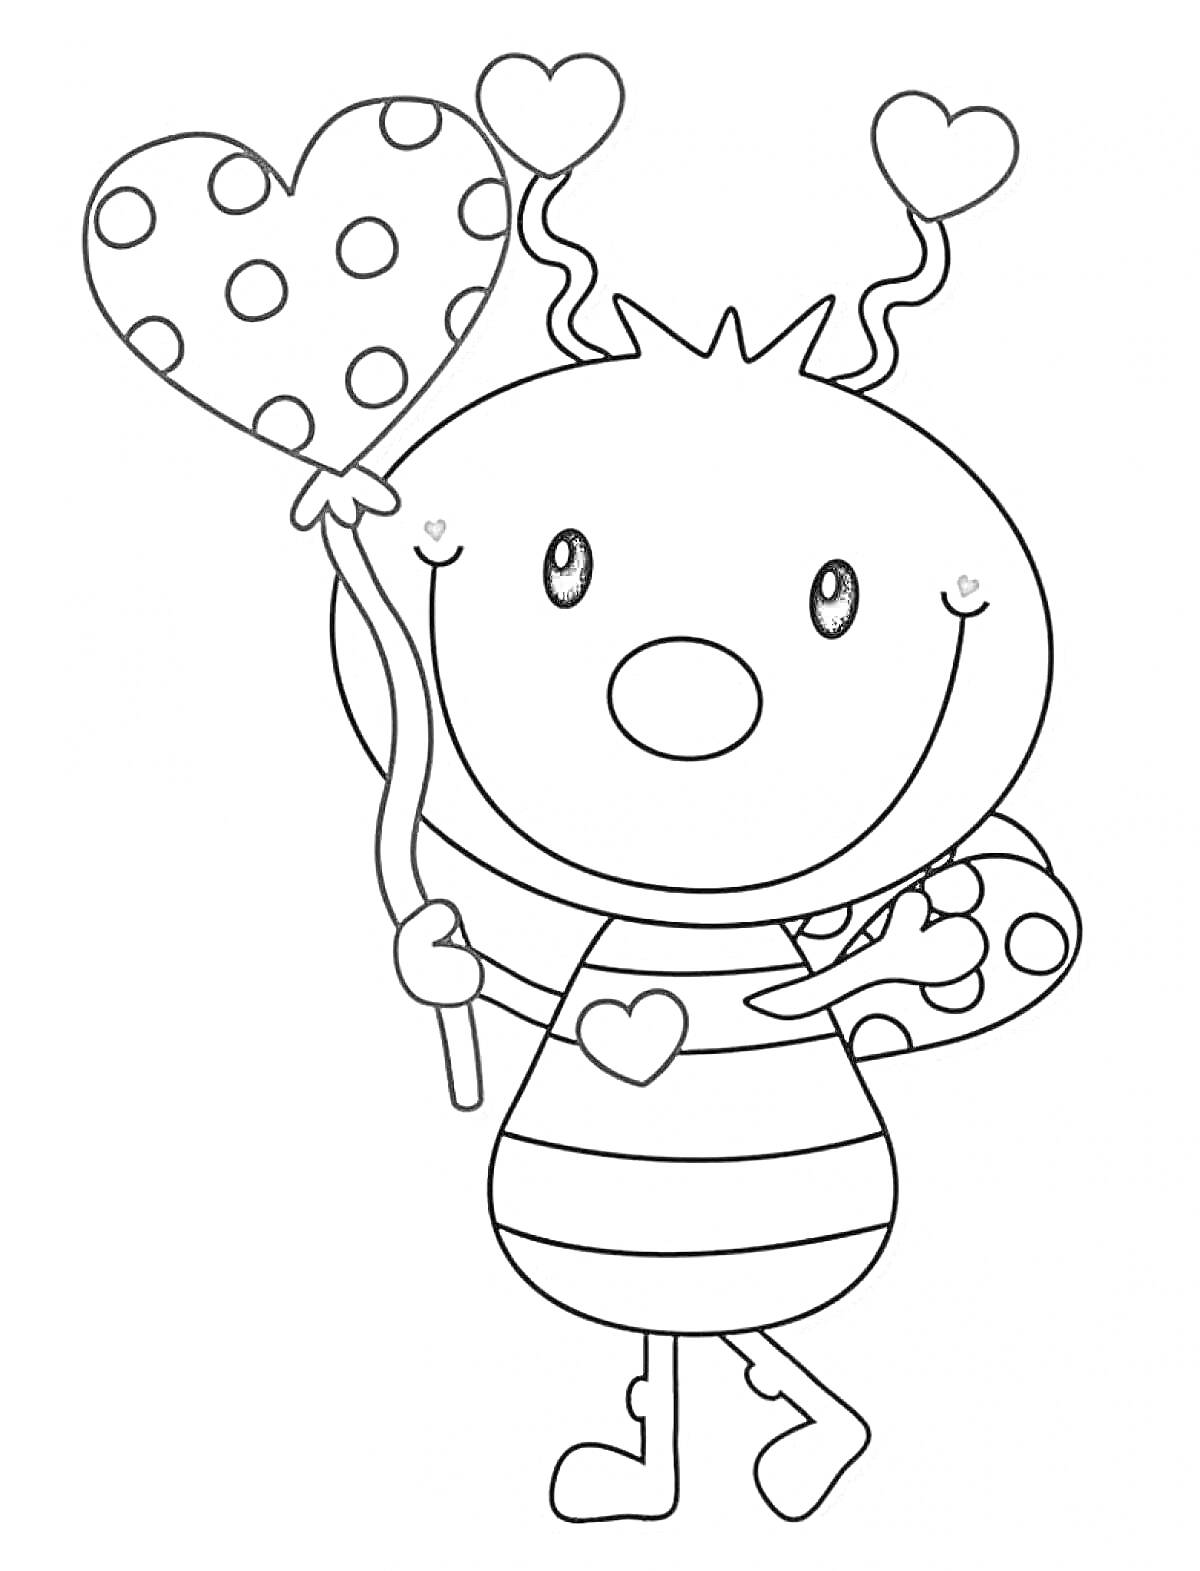 Раскраска Букашка с полосатым туловищем, держащая в руках воздушный шар в форме сердца